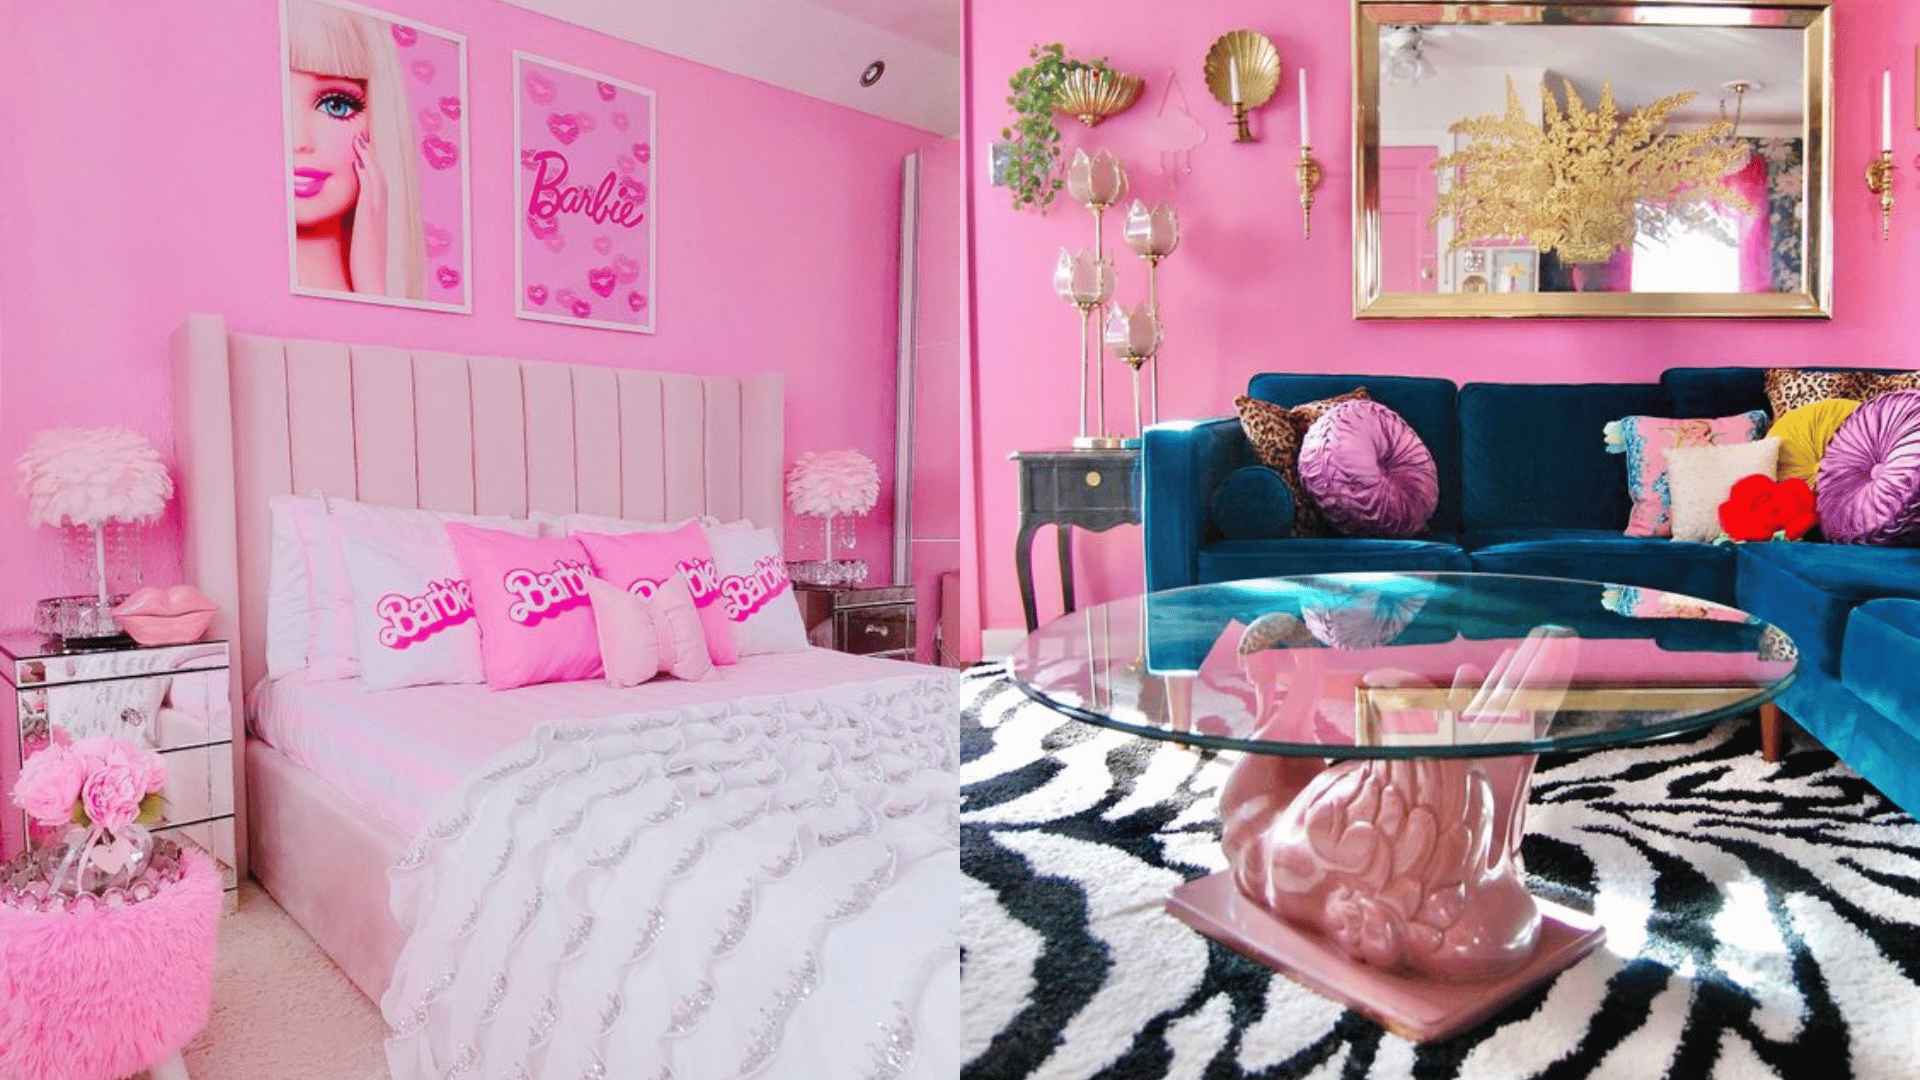 The Barbiecore Interior Design Trend & Minimalism Aesthetic